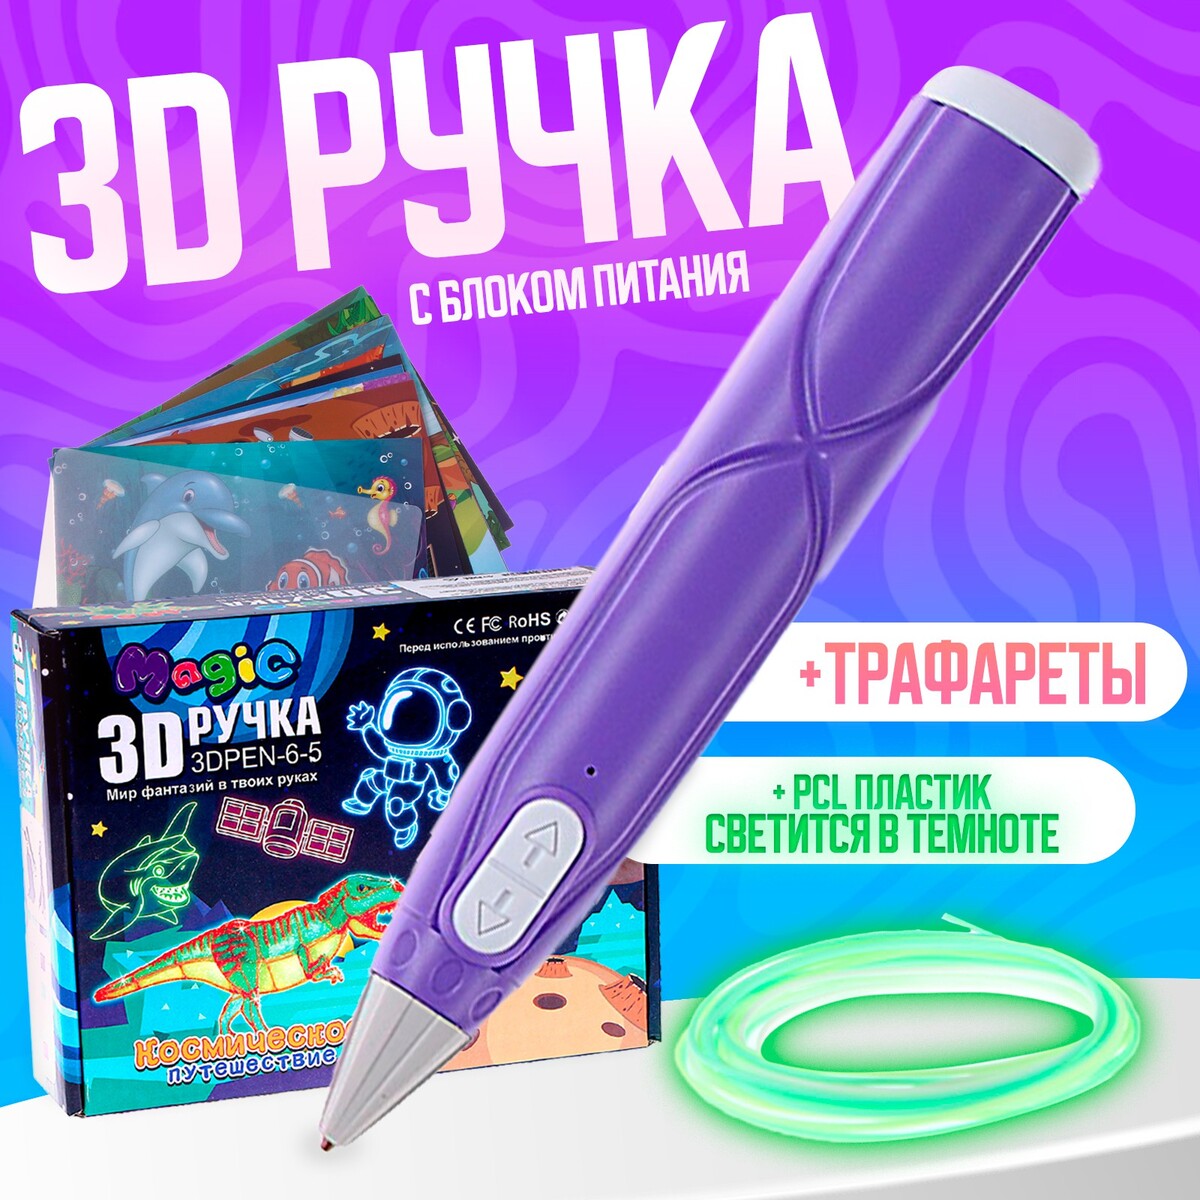 3d ручка, набор pcl пластика светящегося в темноте, мод. pn014, цвет фиолетовый набор маникюрный 3 предмета фиолетовый серебристый